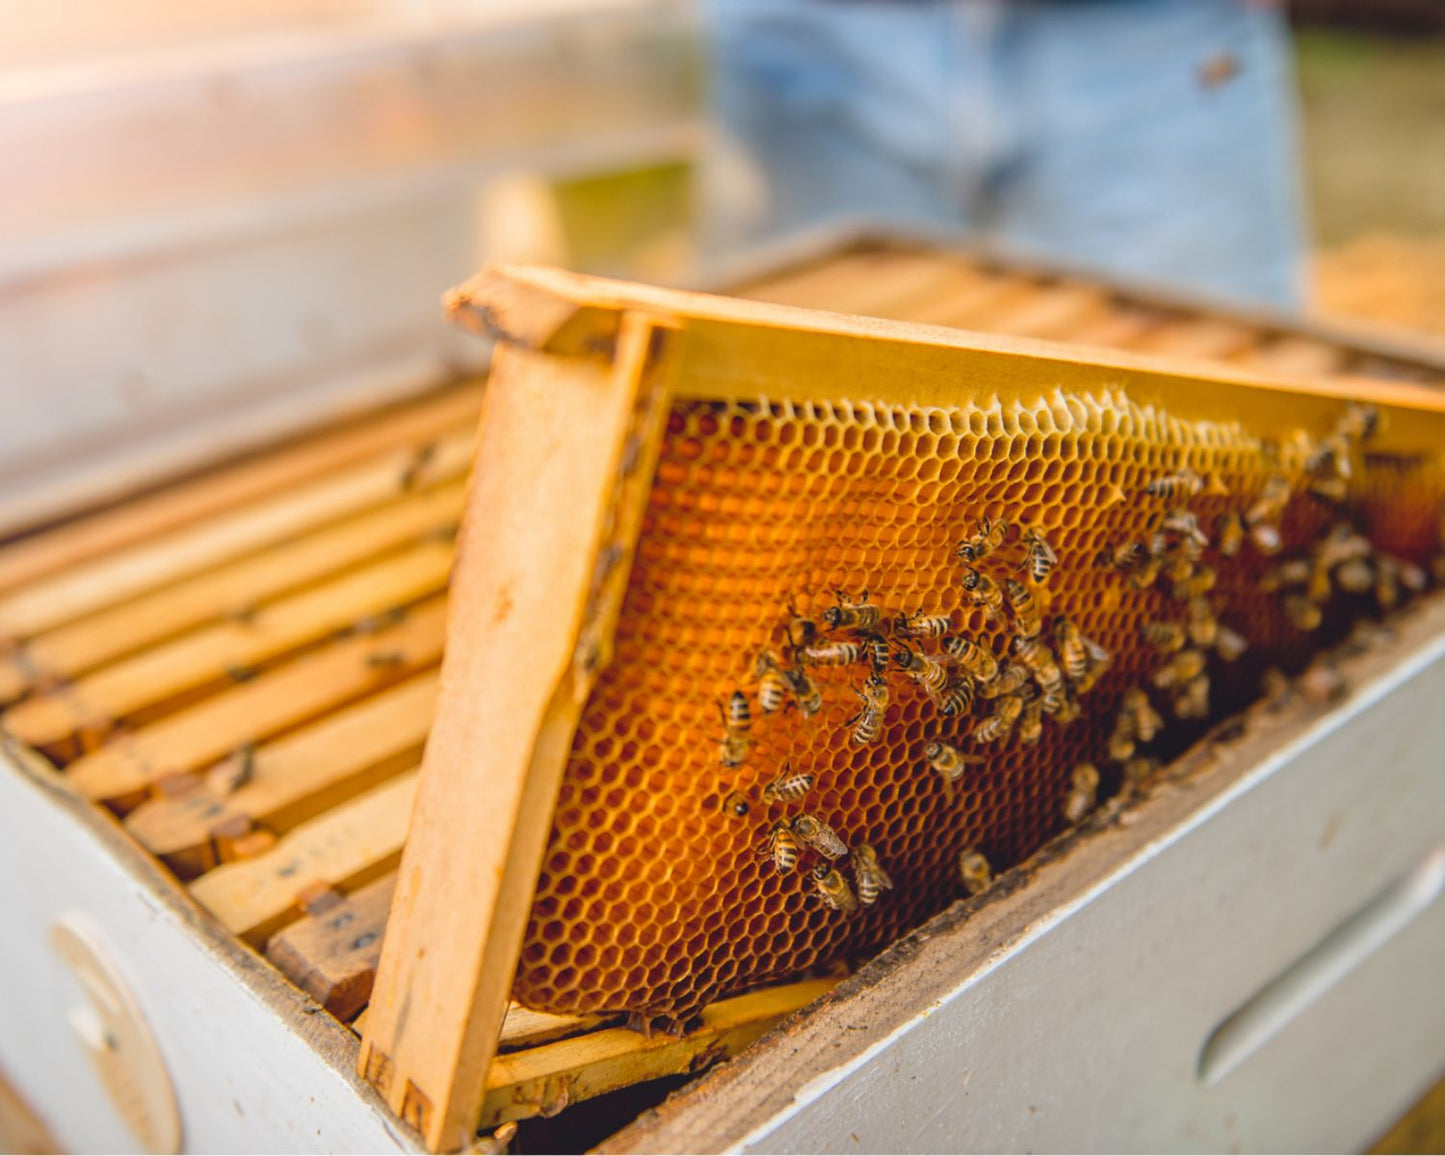 Übernehmen Sie eine Bienenpatenschaft und erhalten Sie 1 Jahr lang Honig!